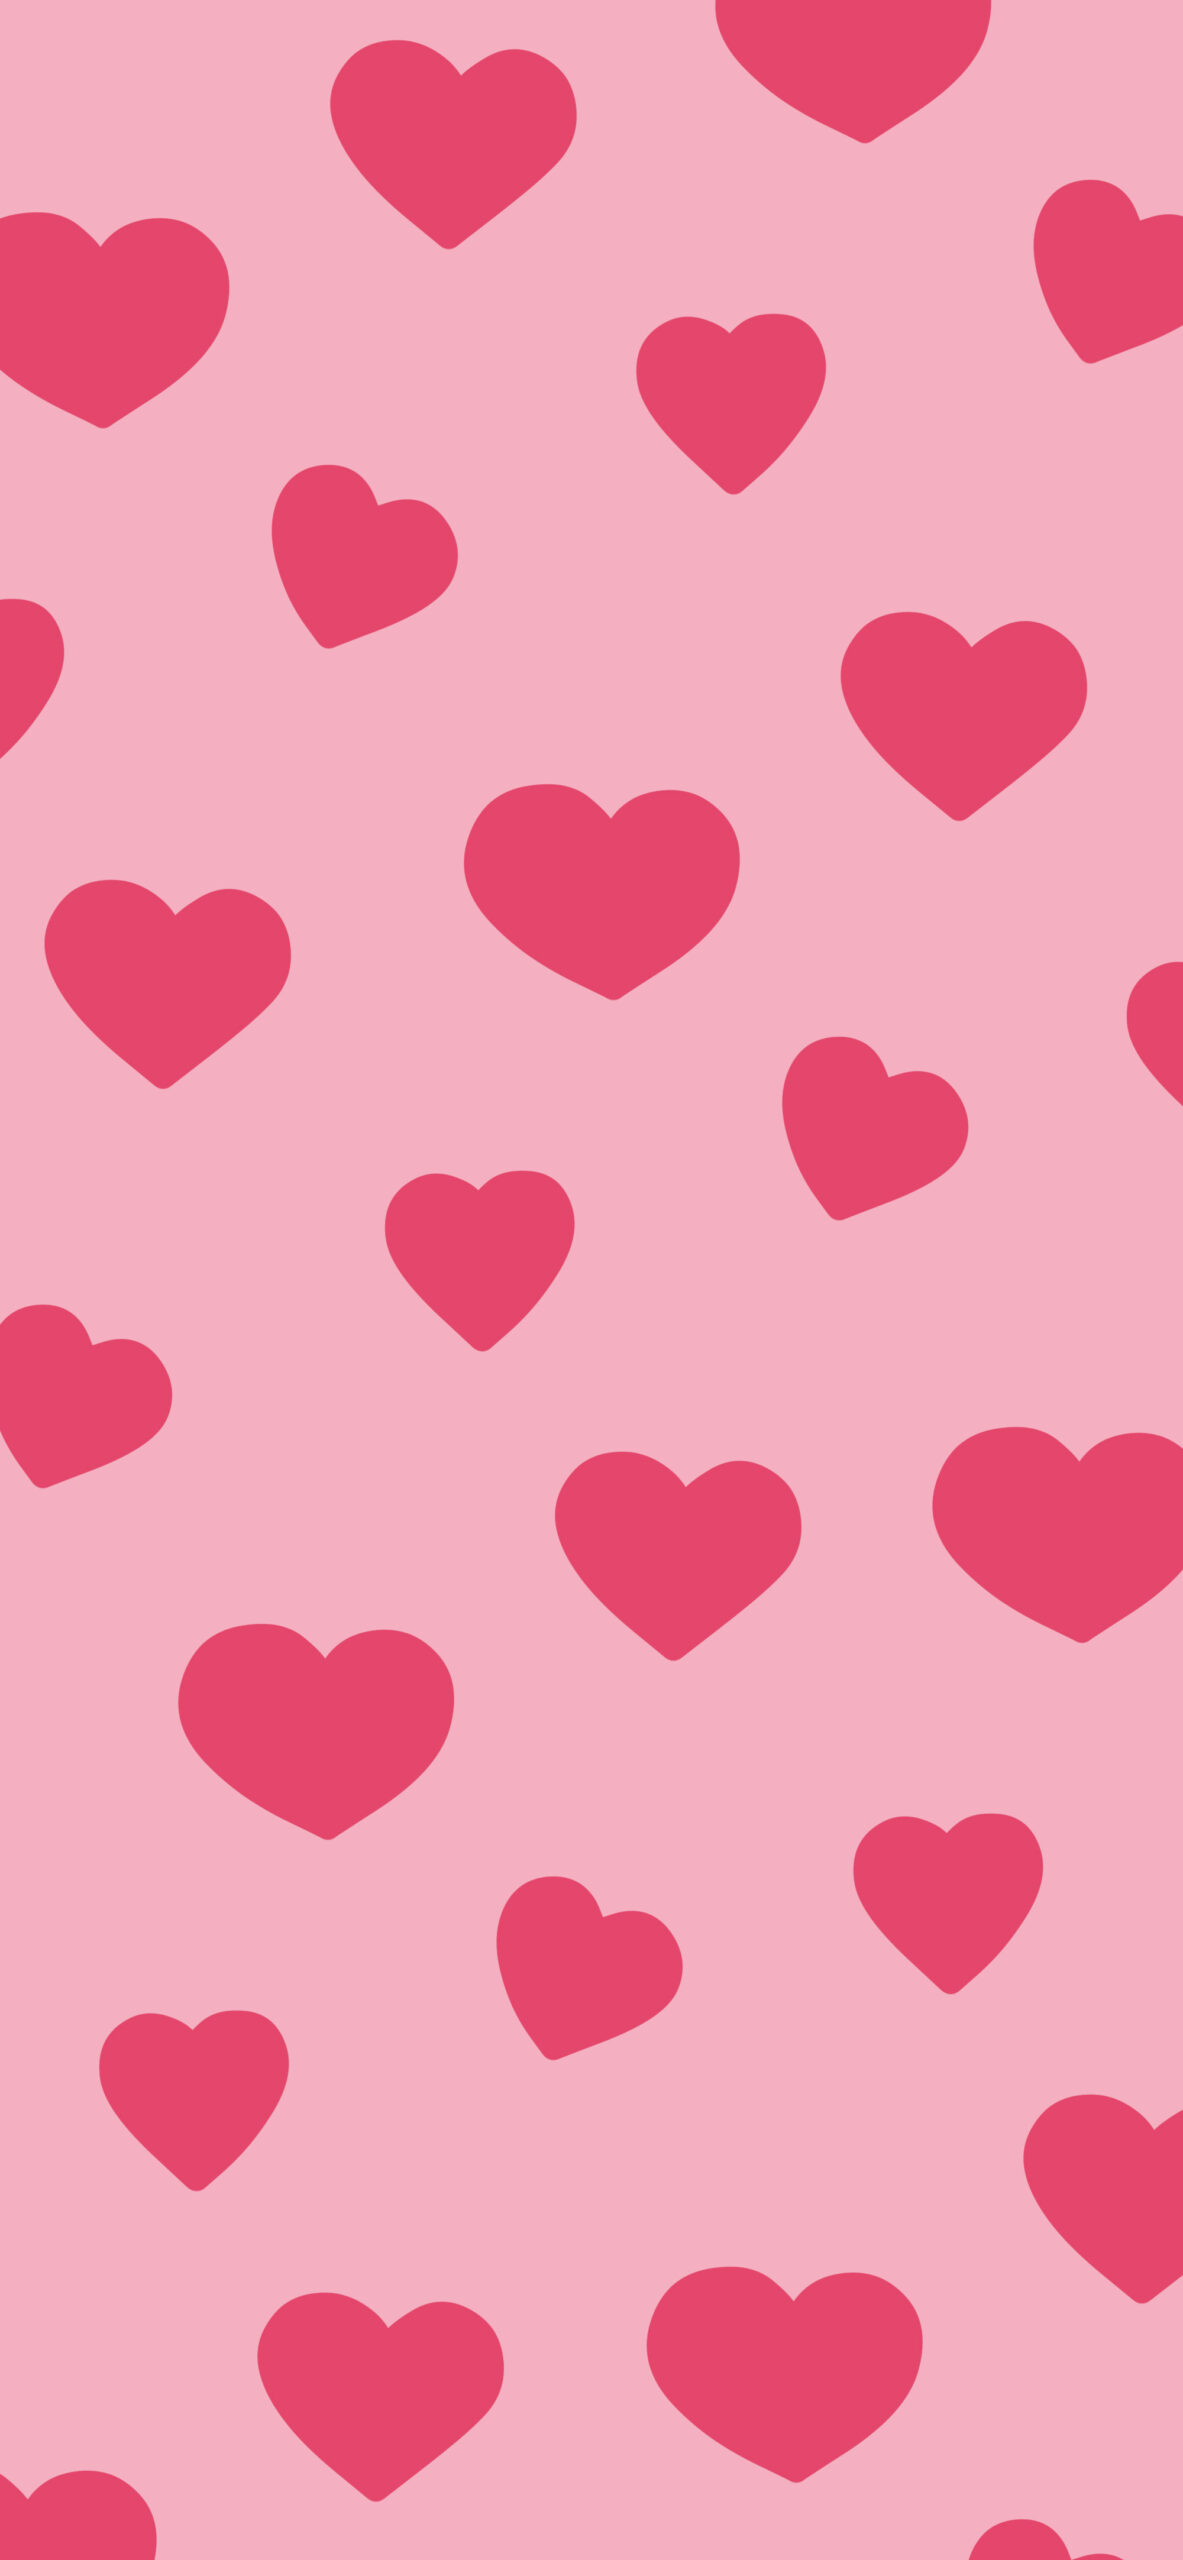 1183x2560 Love Hearts Pattern Pink Wallpaper Aesthetic Heart Wallpaper 4k